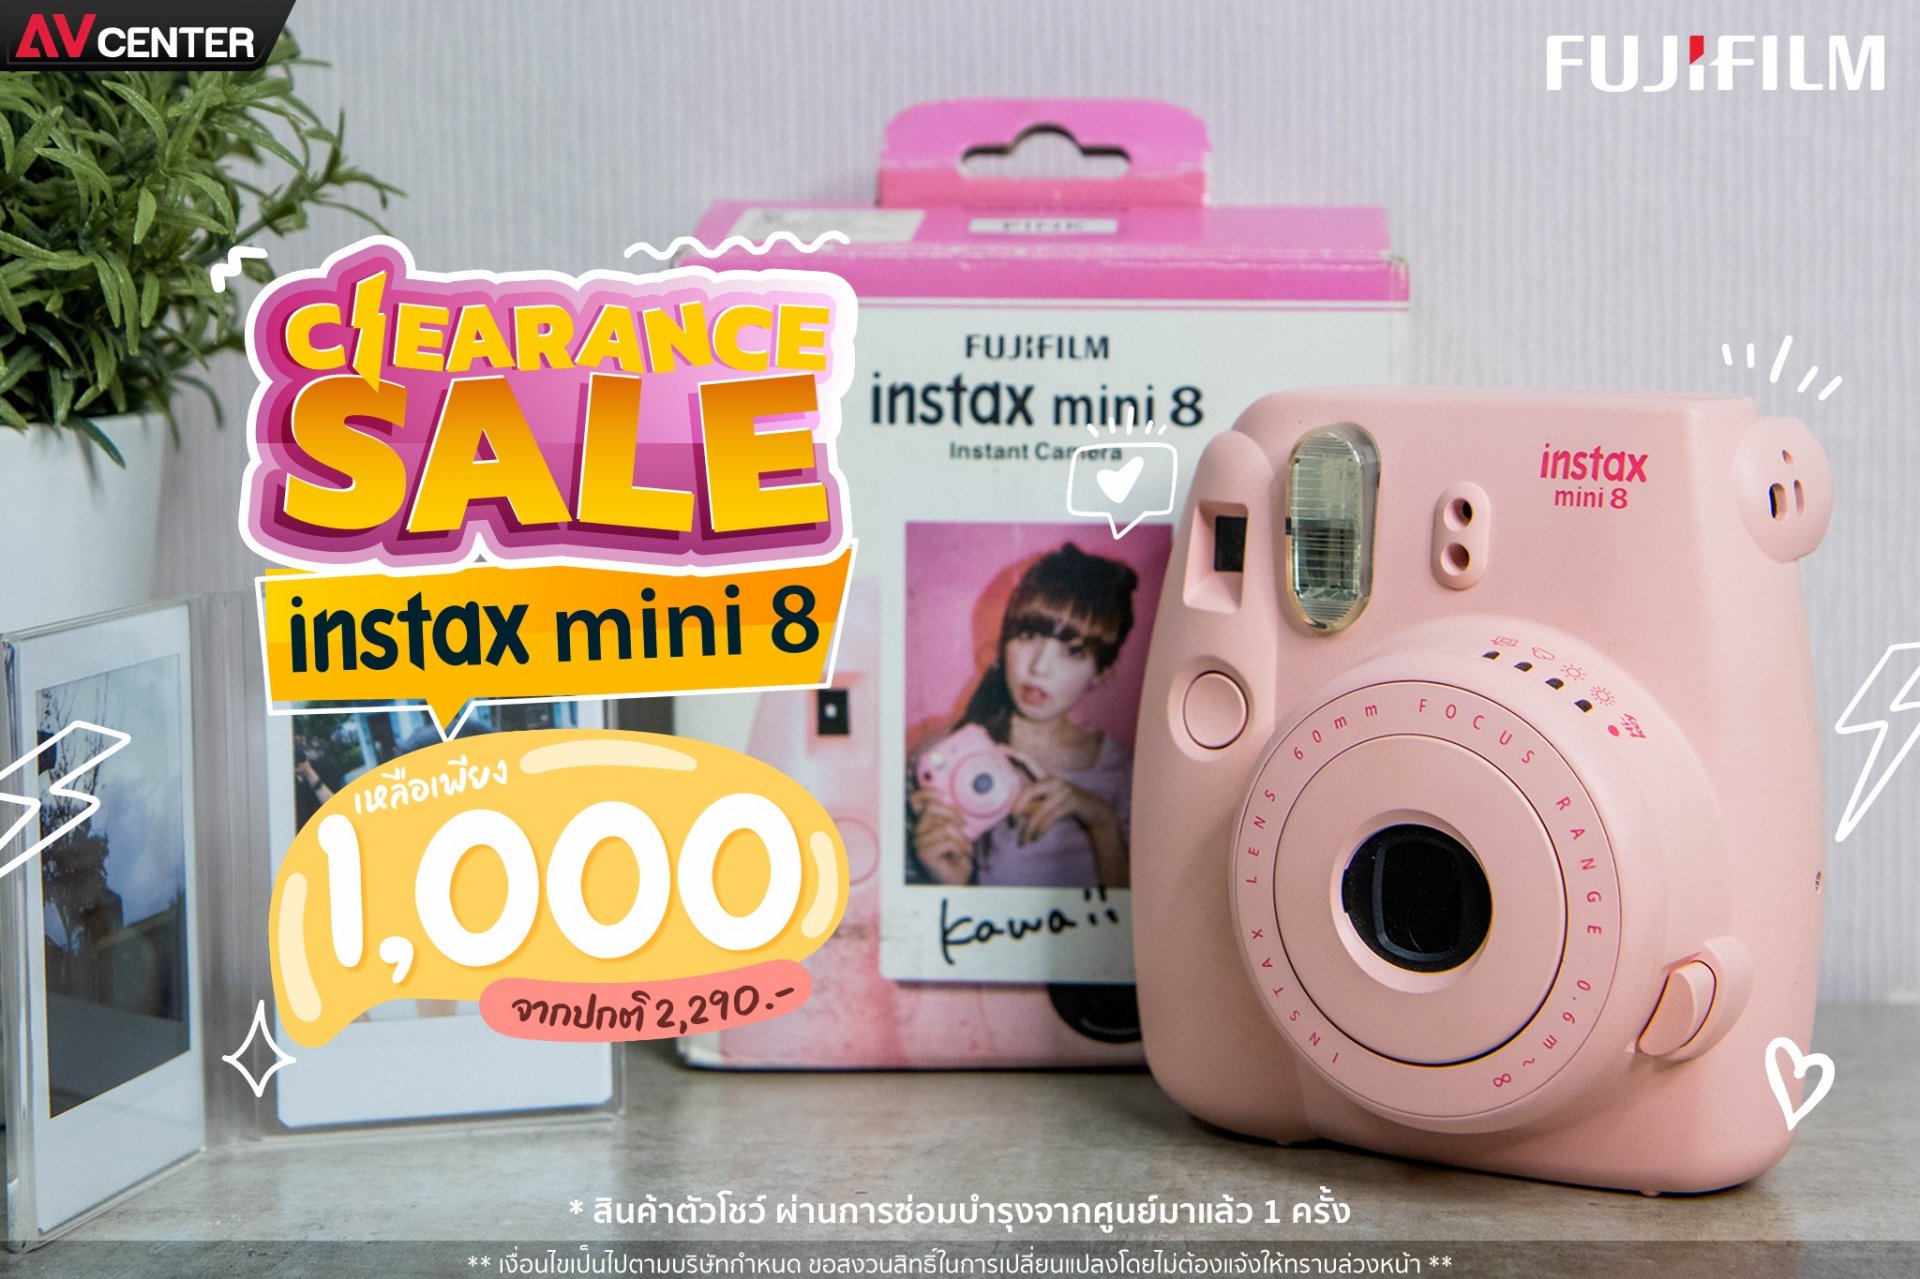  Clearance sale ล้างสต็อก ช็อกราคา !!! Fujifilm instax mini 8